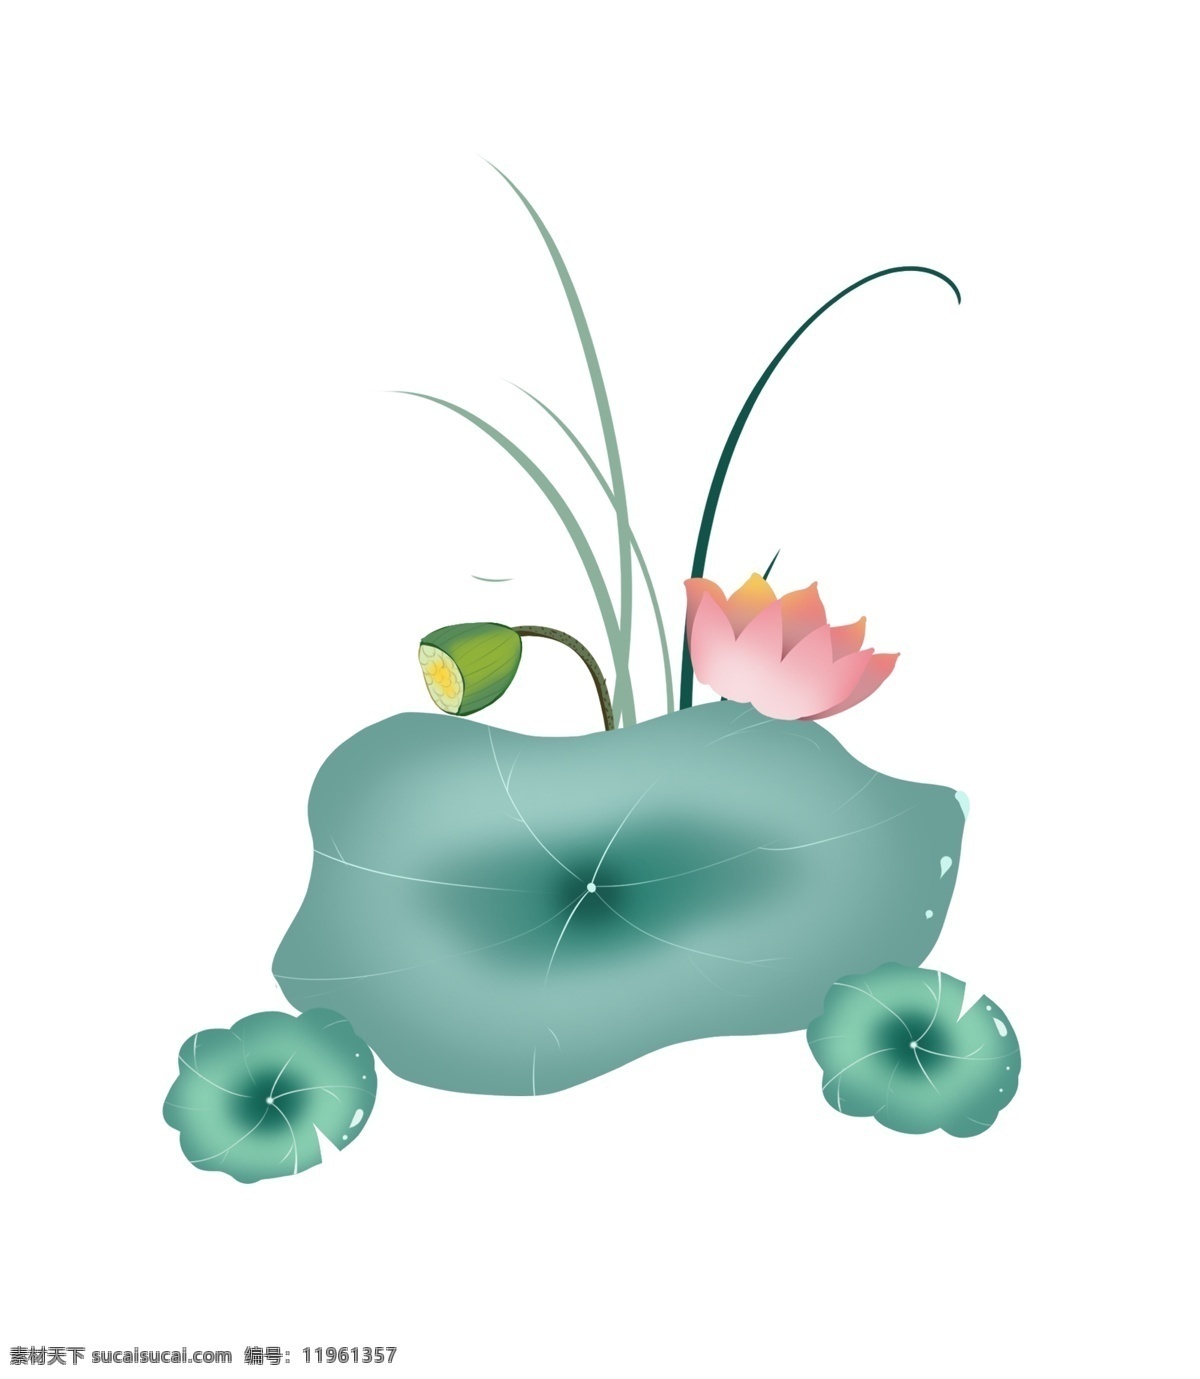 唯美 的卡 通 荷花 插画 精美 盛开的花朵 植物 花卉 荷花插画 卡通植物插画 创意荷花